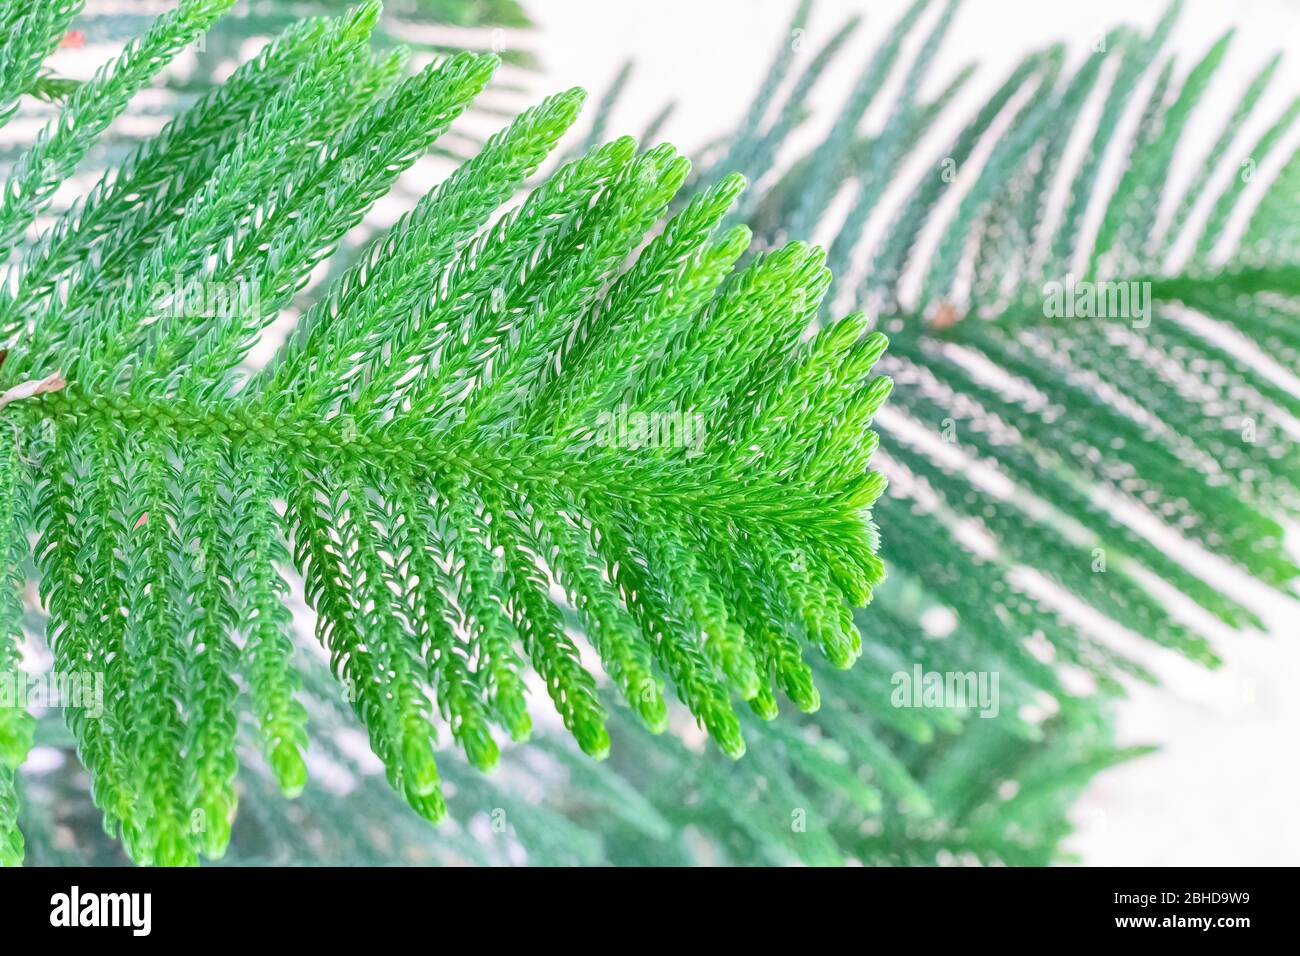 Photo des feuilles de pin de l'île Norfolk montrant sa texture et ses veines et pointes étonnantes Banque D'Images